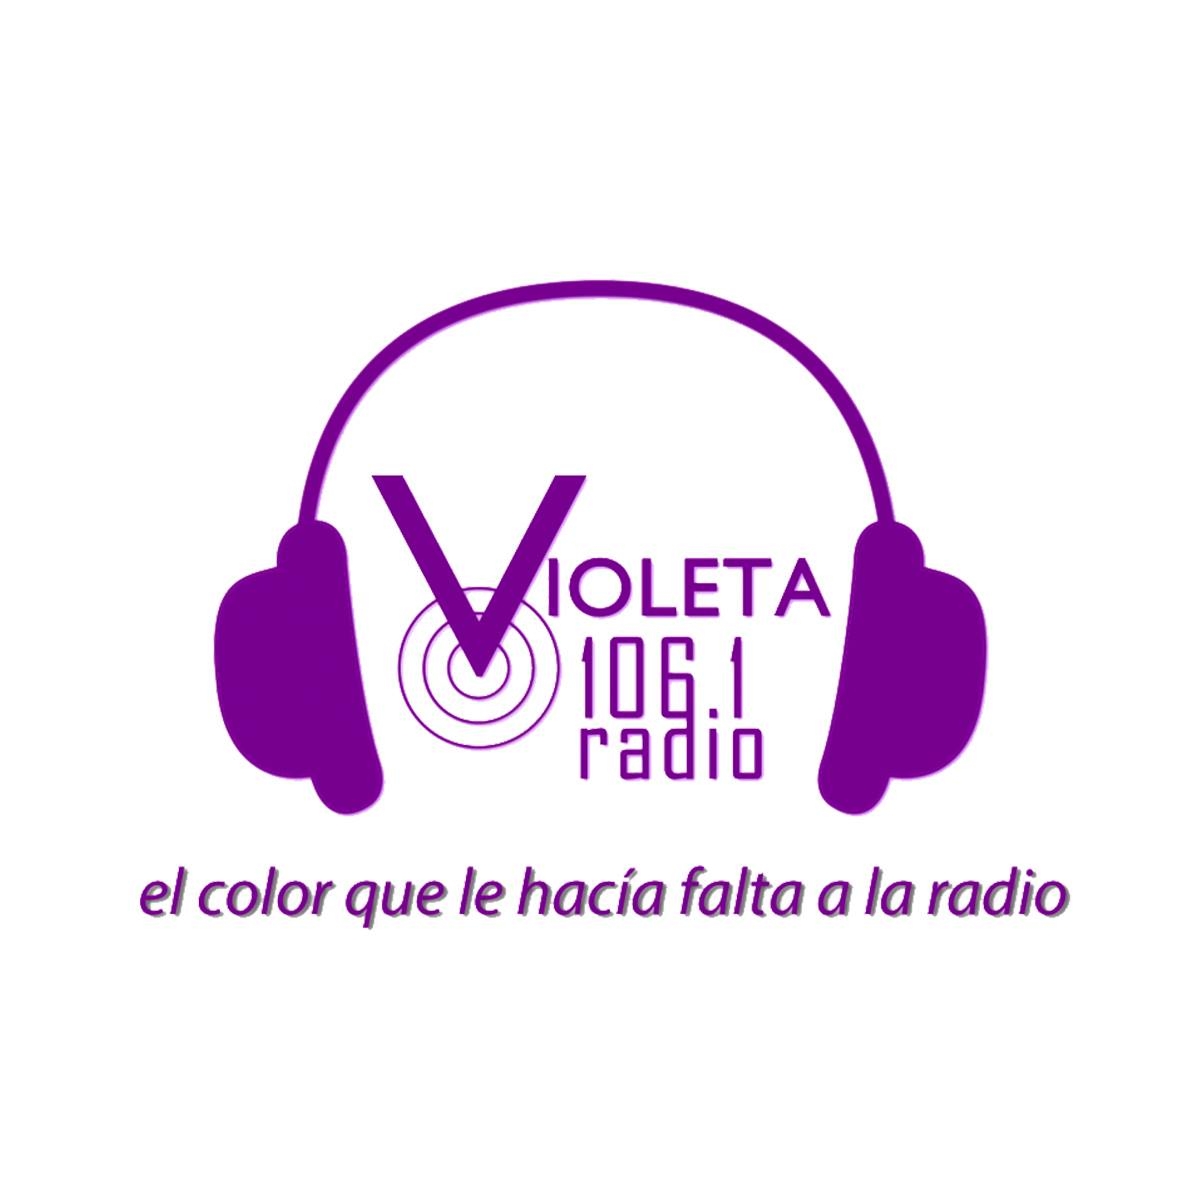 Aún puedes participar en la convocatoria para sonar en Violeta Radio